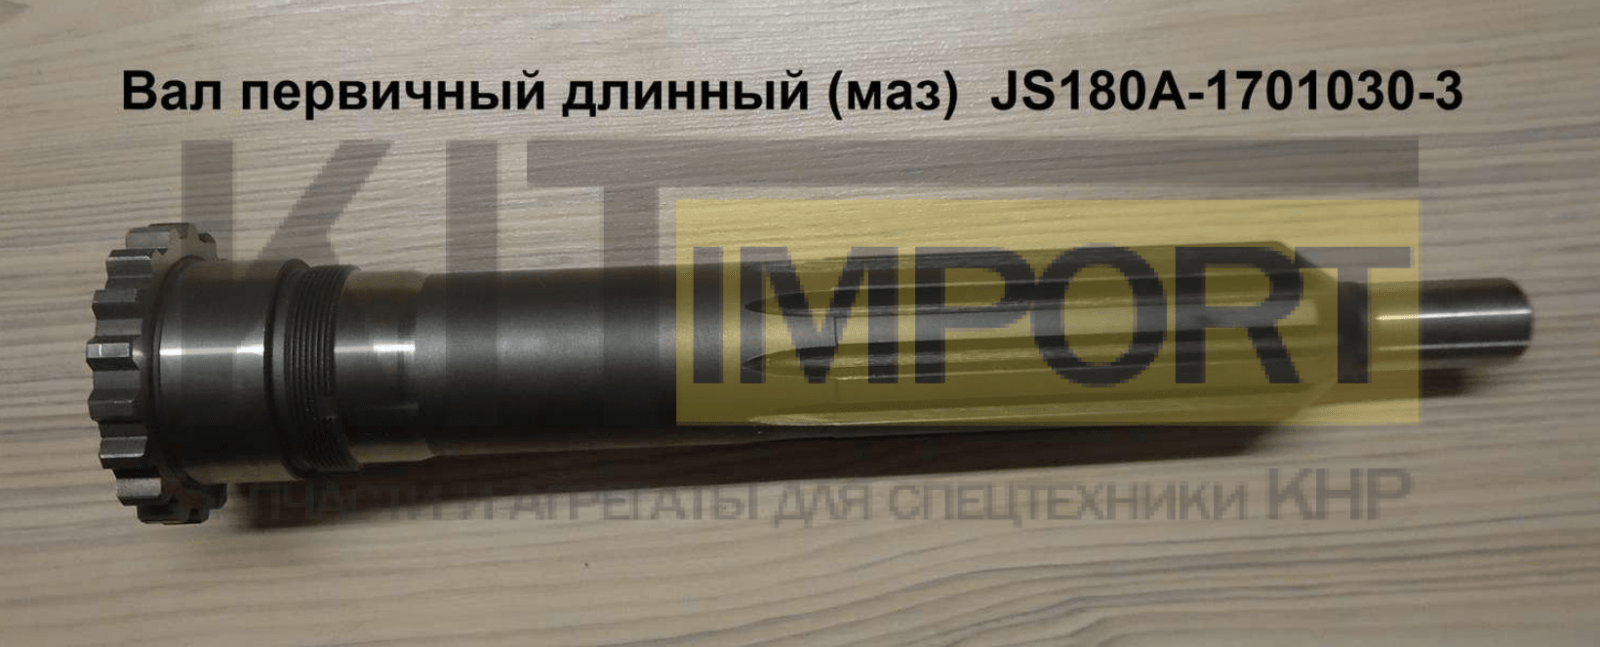 Вал первичный длинный (маз) JS180A-1701030-3